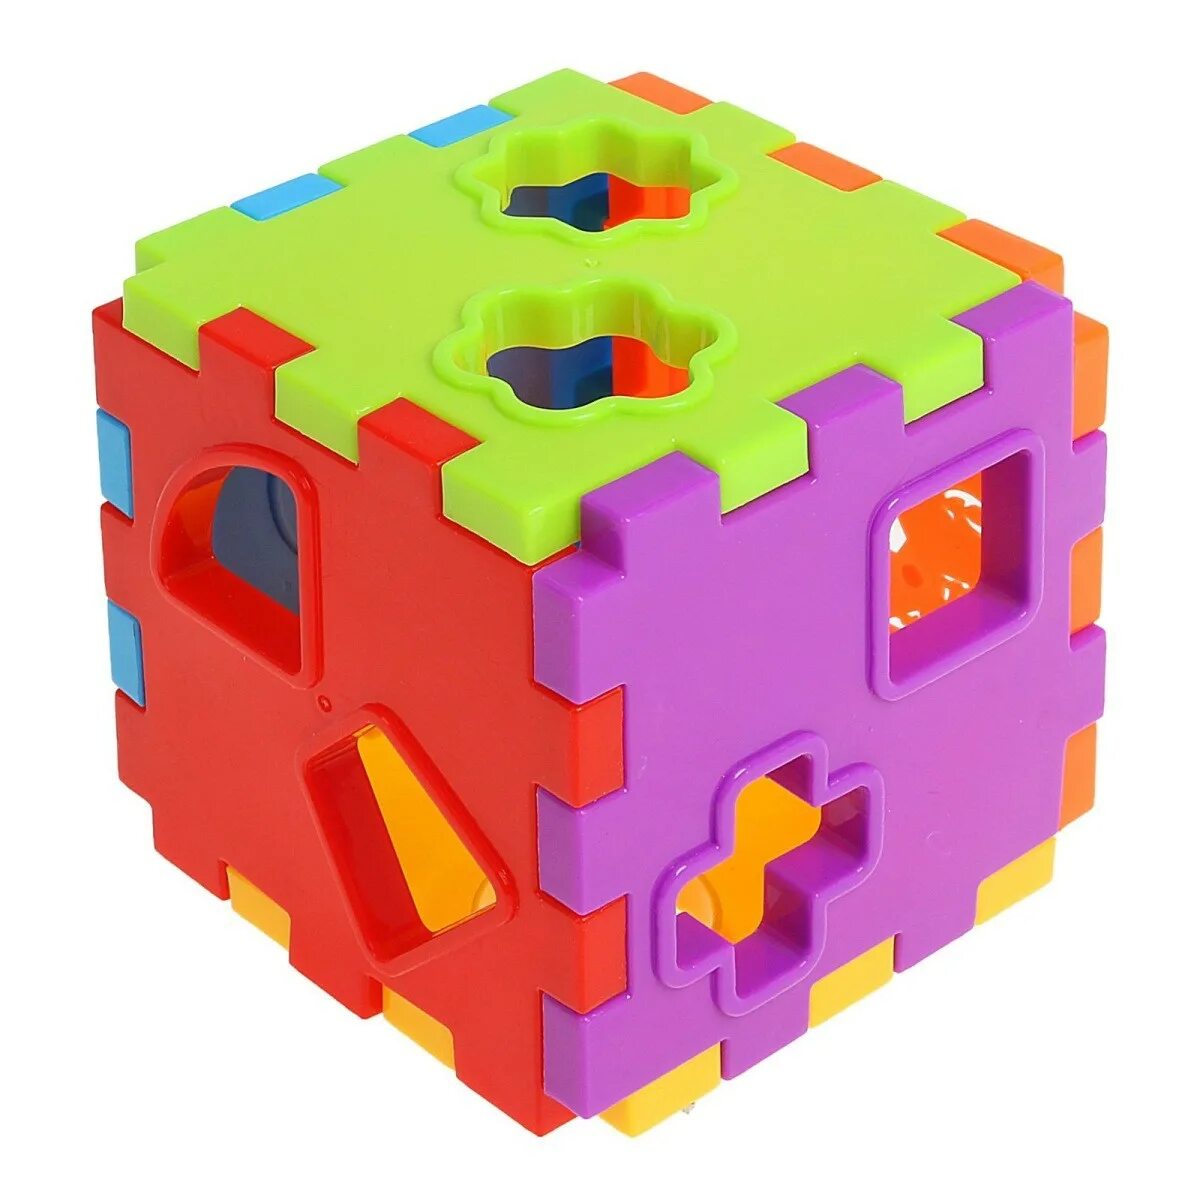 Кубы сортеры. Игрушка-сортер ABC куб bh2107. Сортер куб с отверстиями Монтессори. S-Mala развивающая игрушка сортер логика 13004. Логический куб для детей.